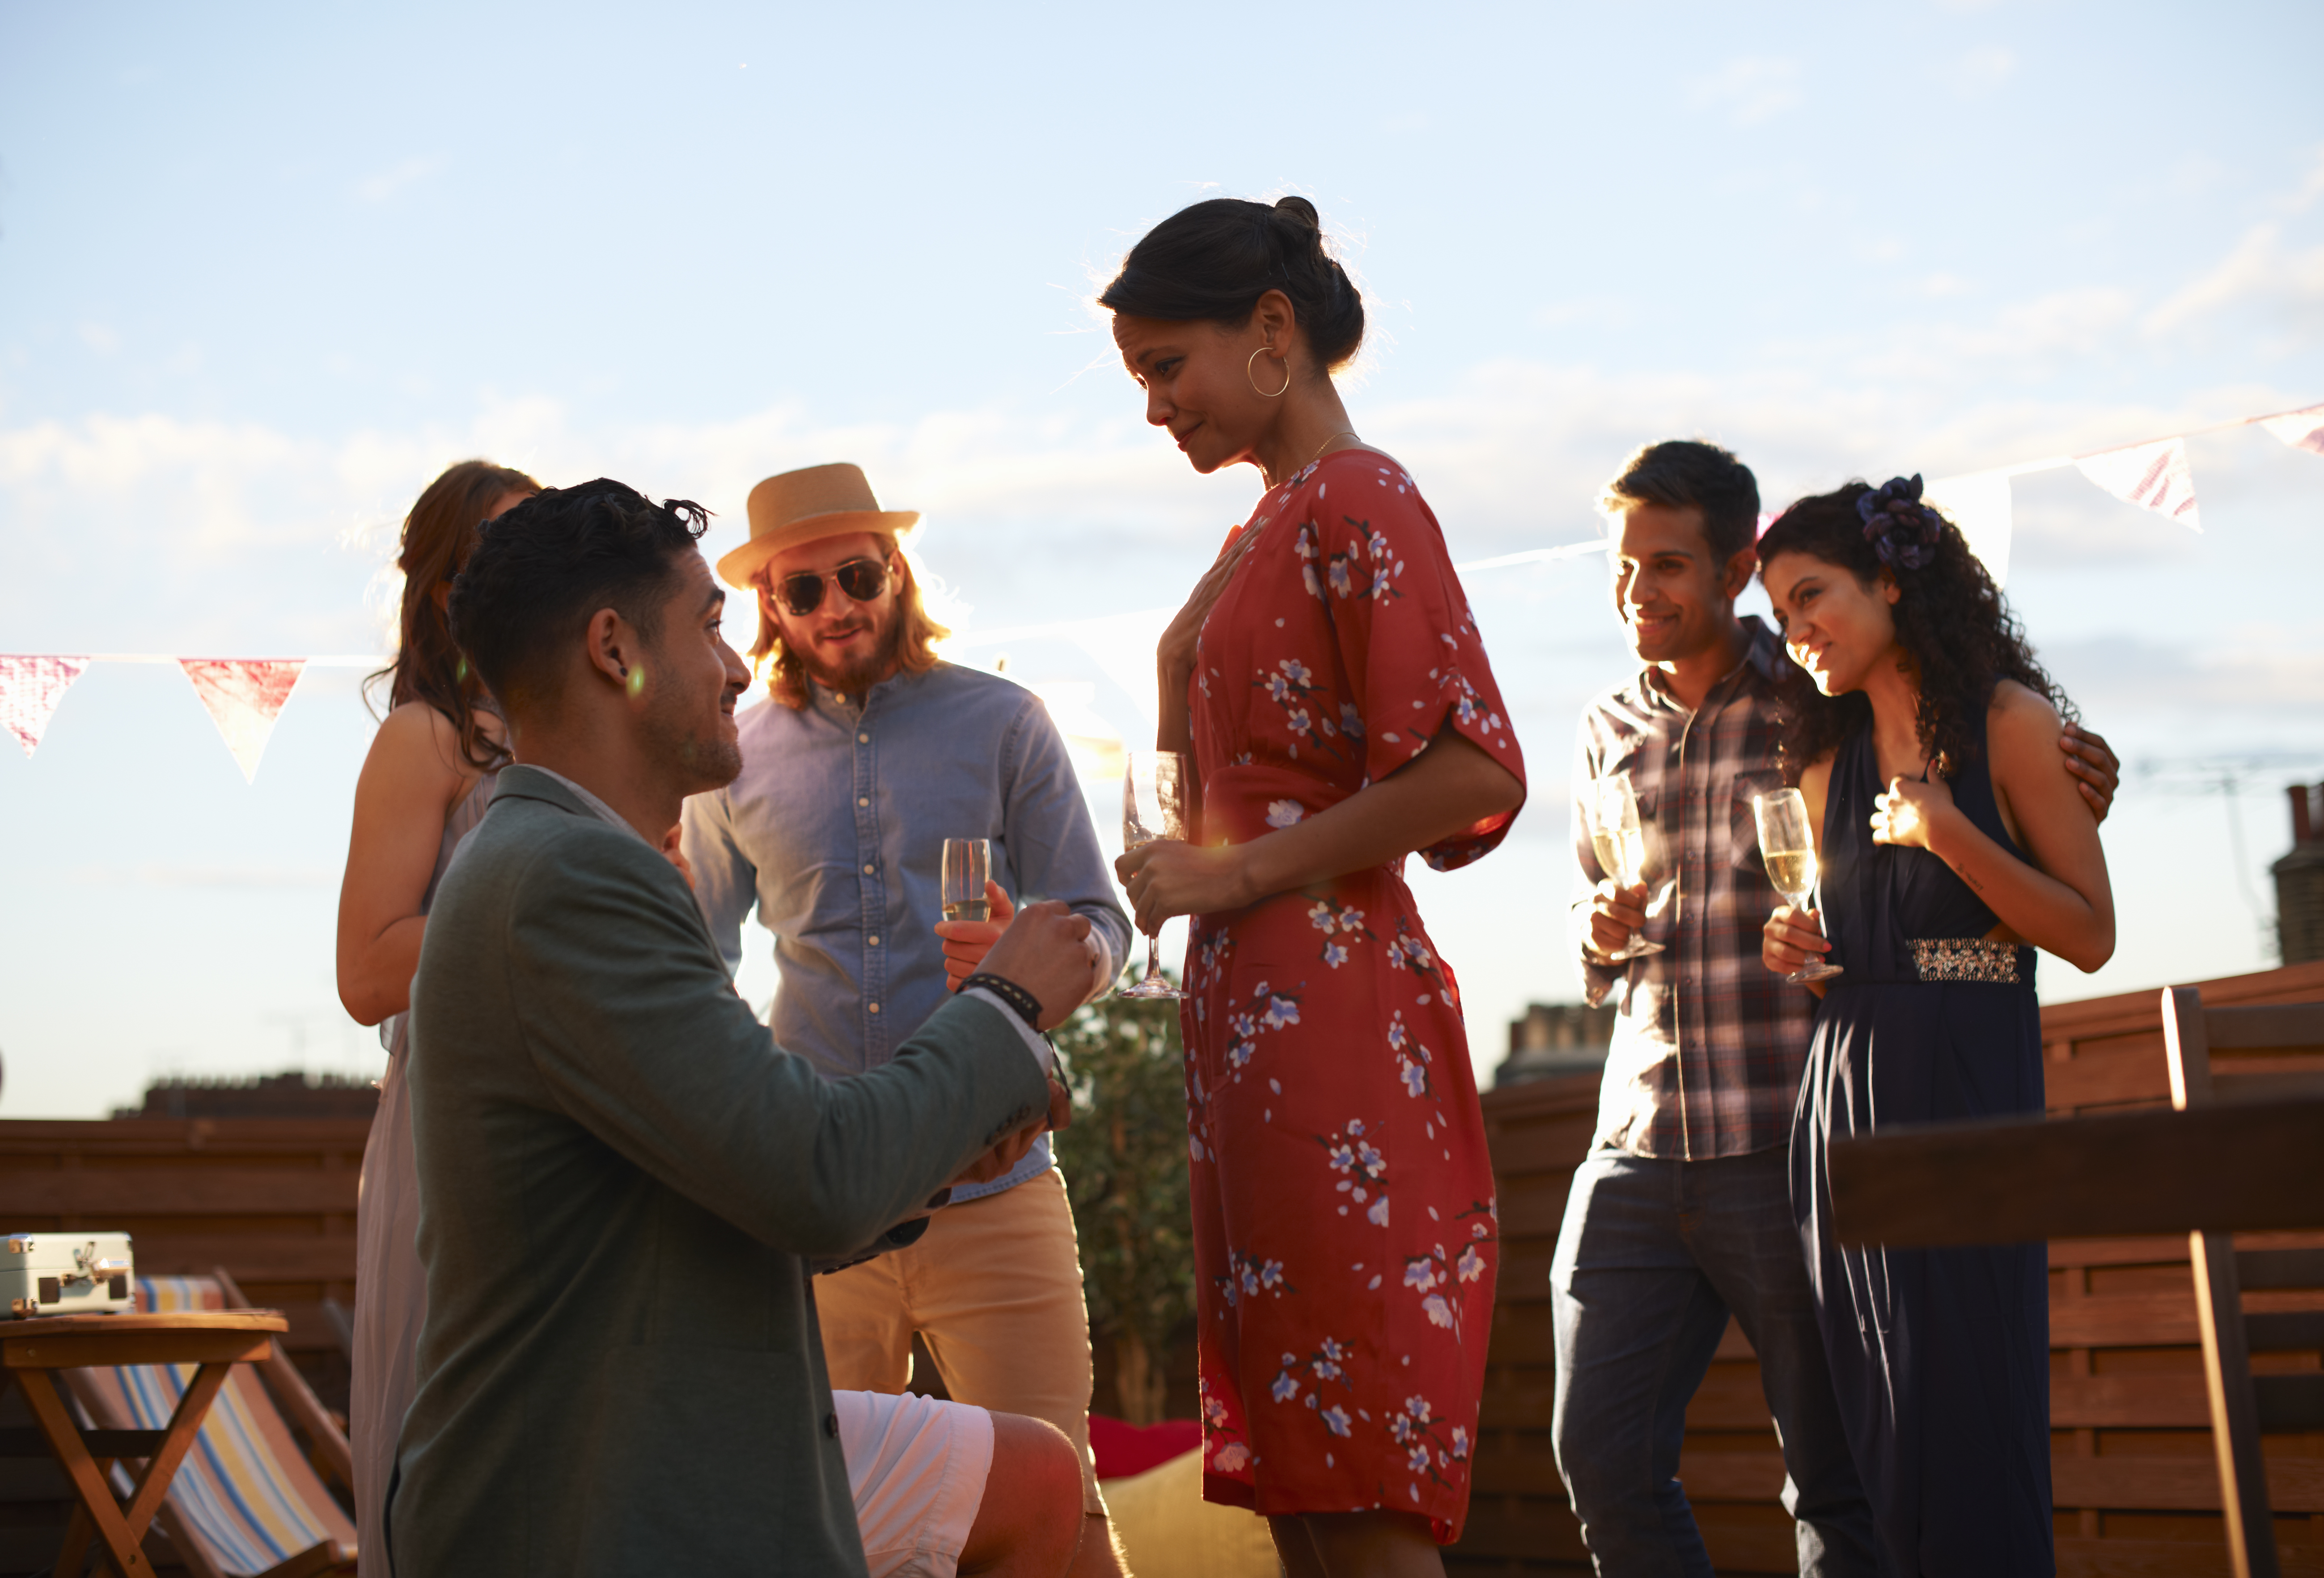 Ein Mann macht einer Frau vor ihren Freunden einen Heiratsantrag | Quelle: Getty Images